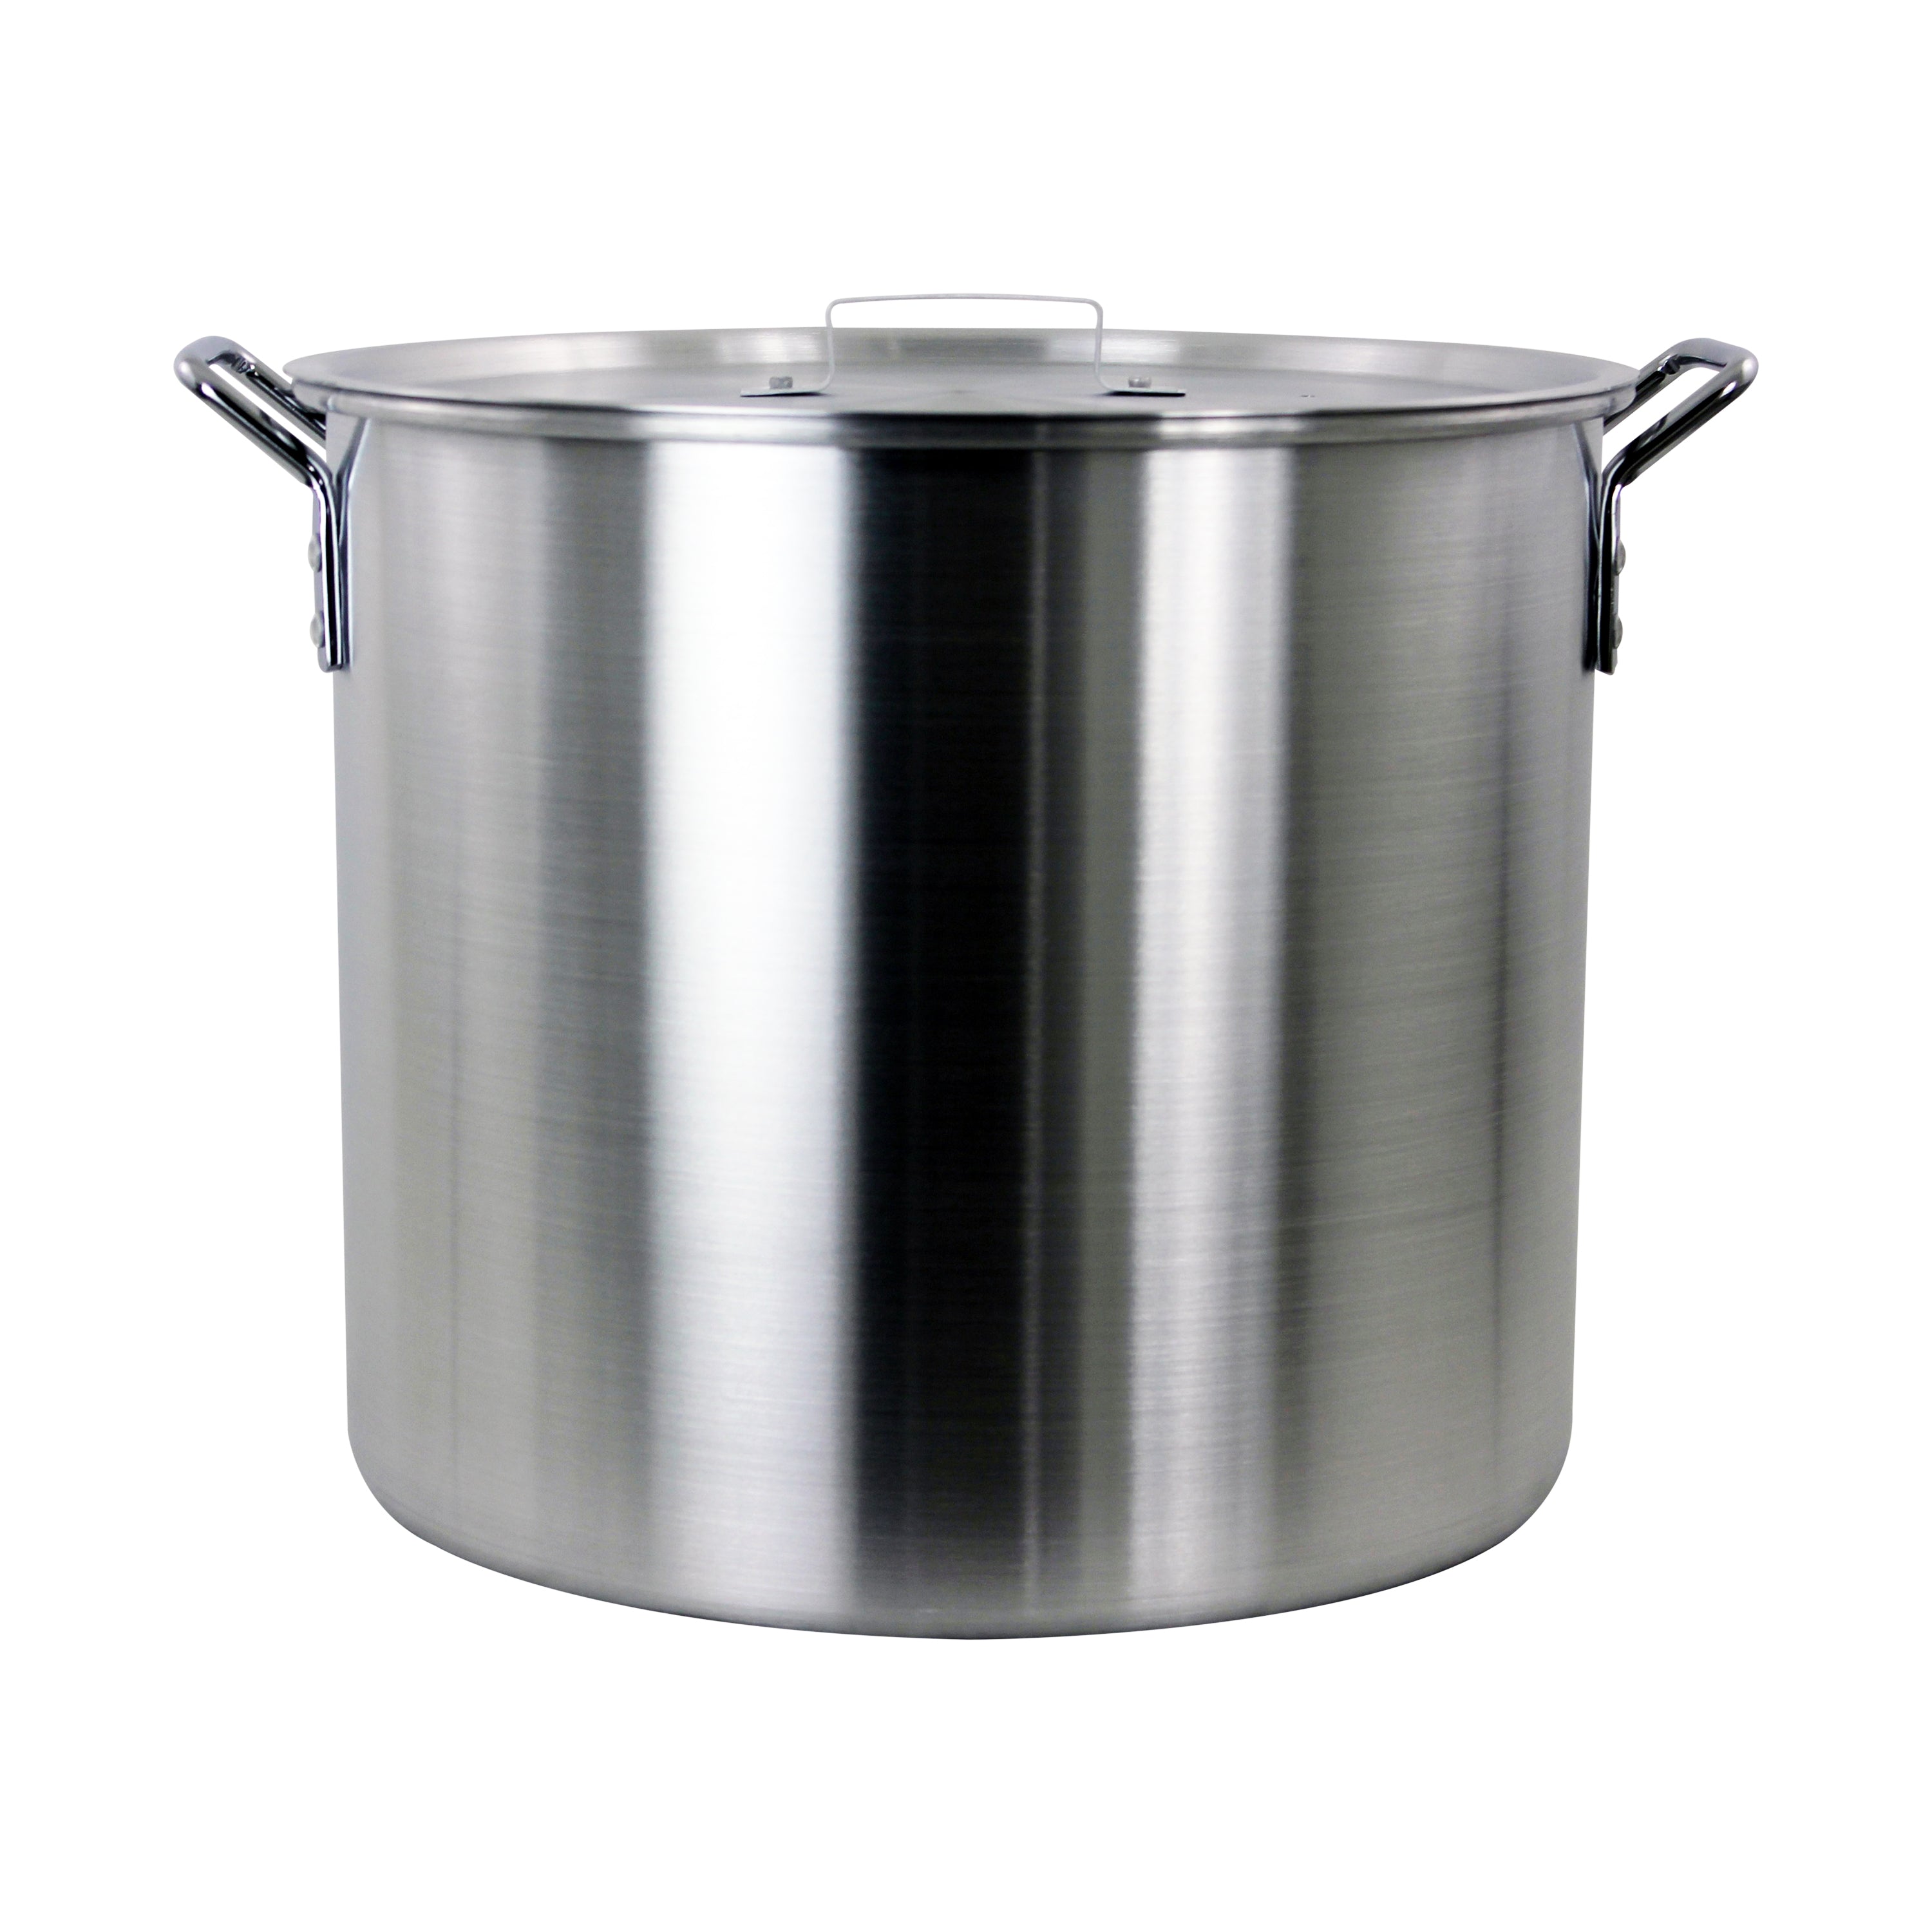 Nexgrill 42 Quarts Aluminum Stock Pot